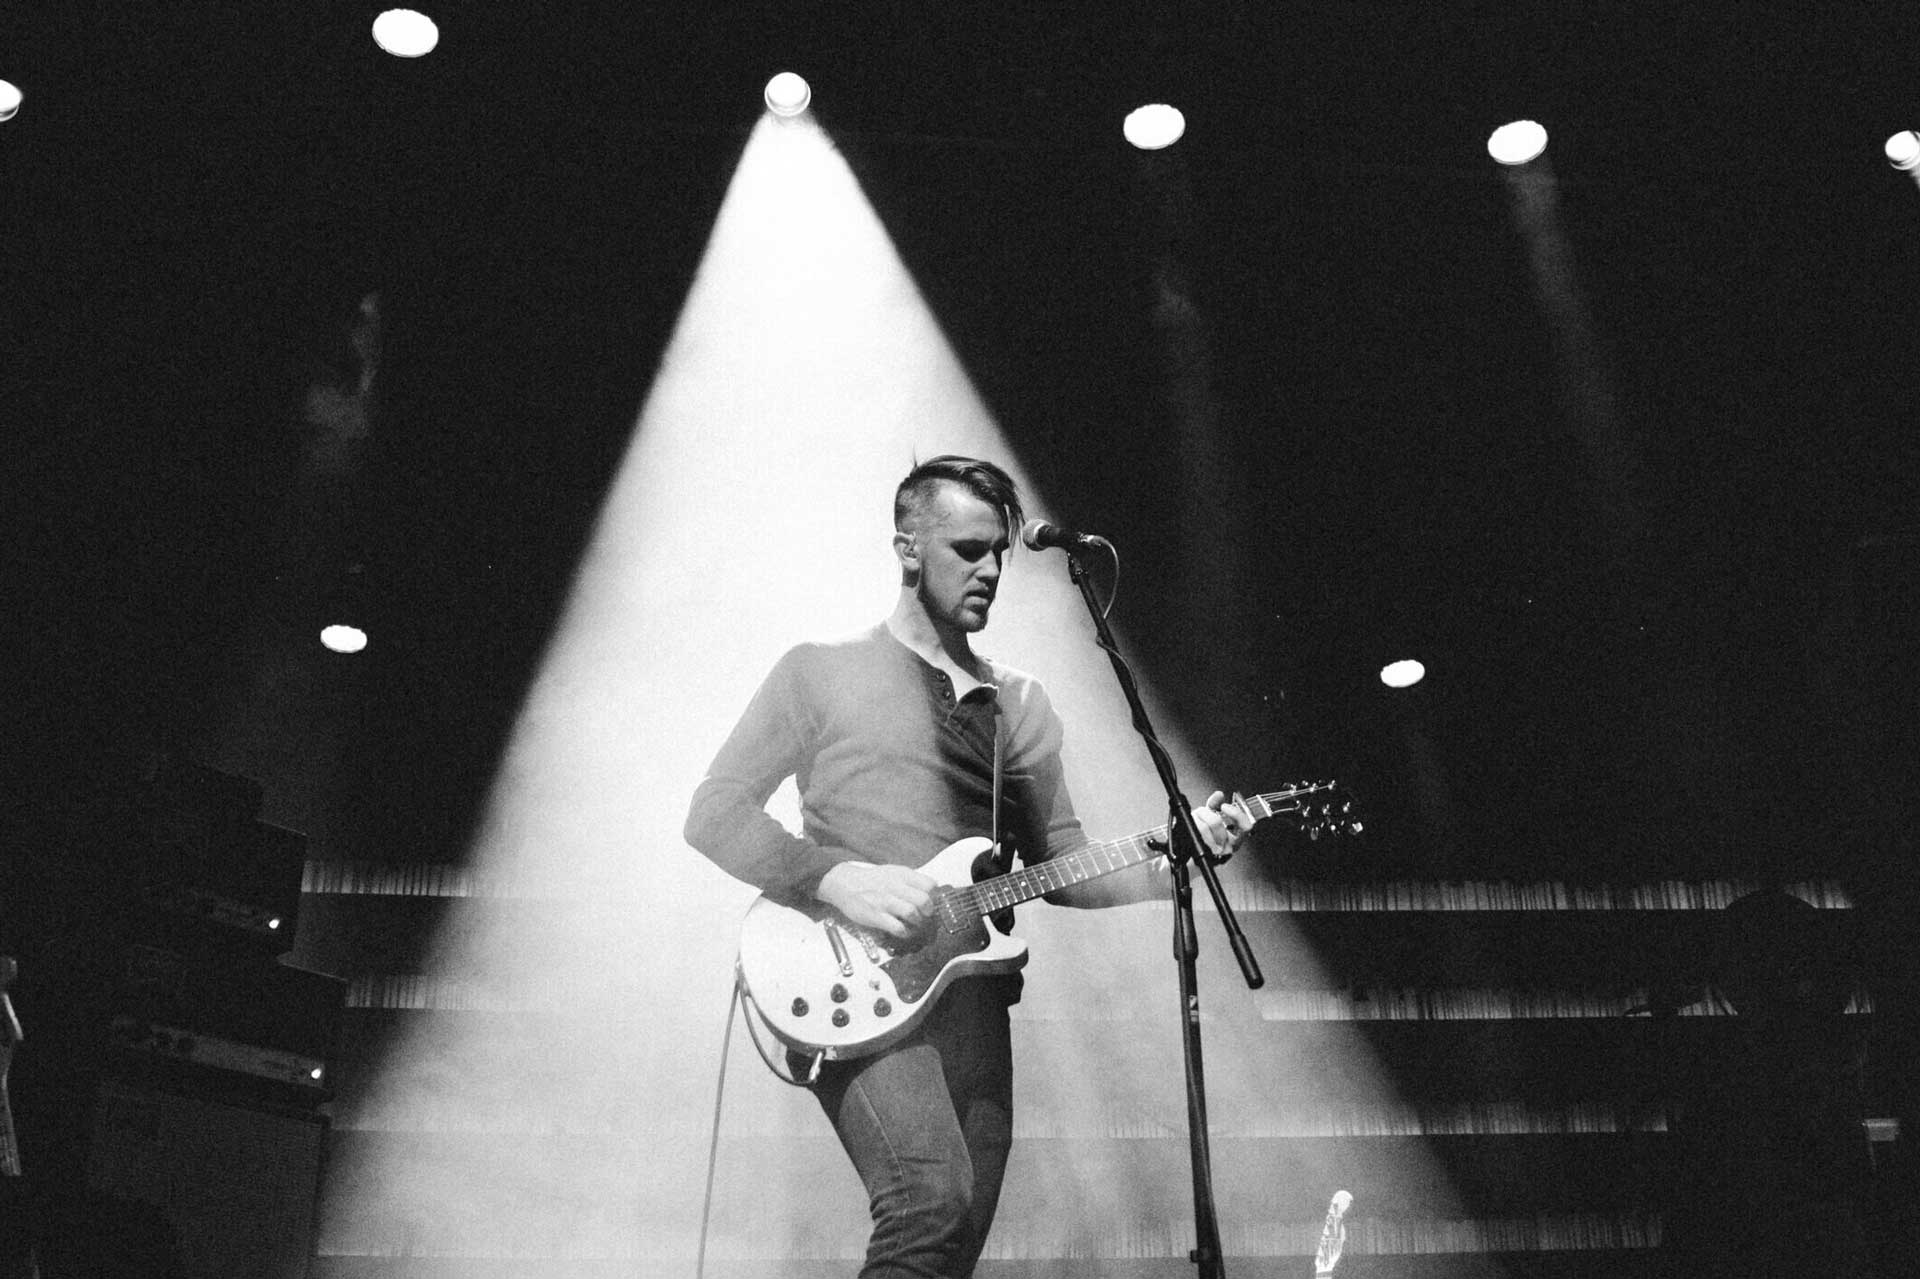 El músico Peter Ferguson sobre el escenario con guitarra y micrófono bajo el reflector